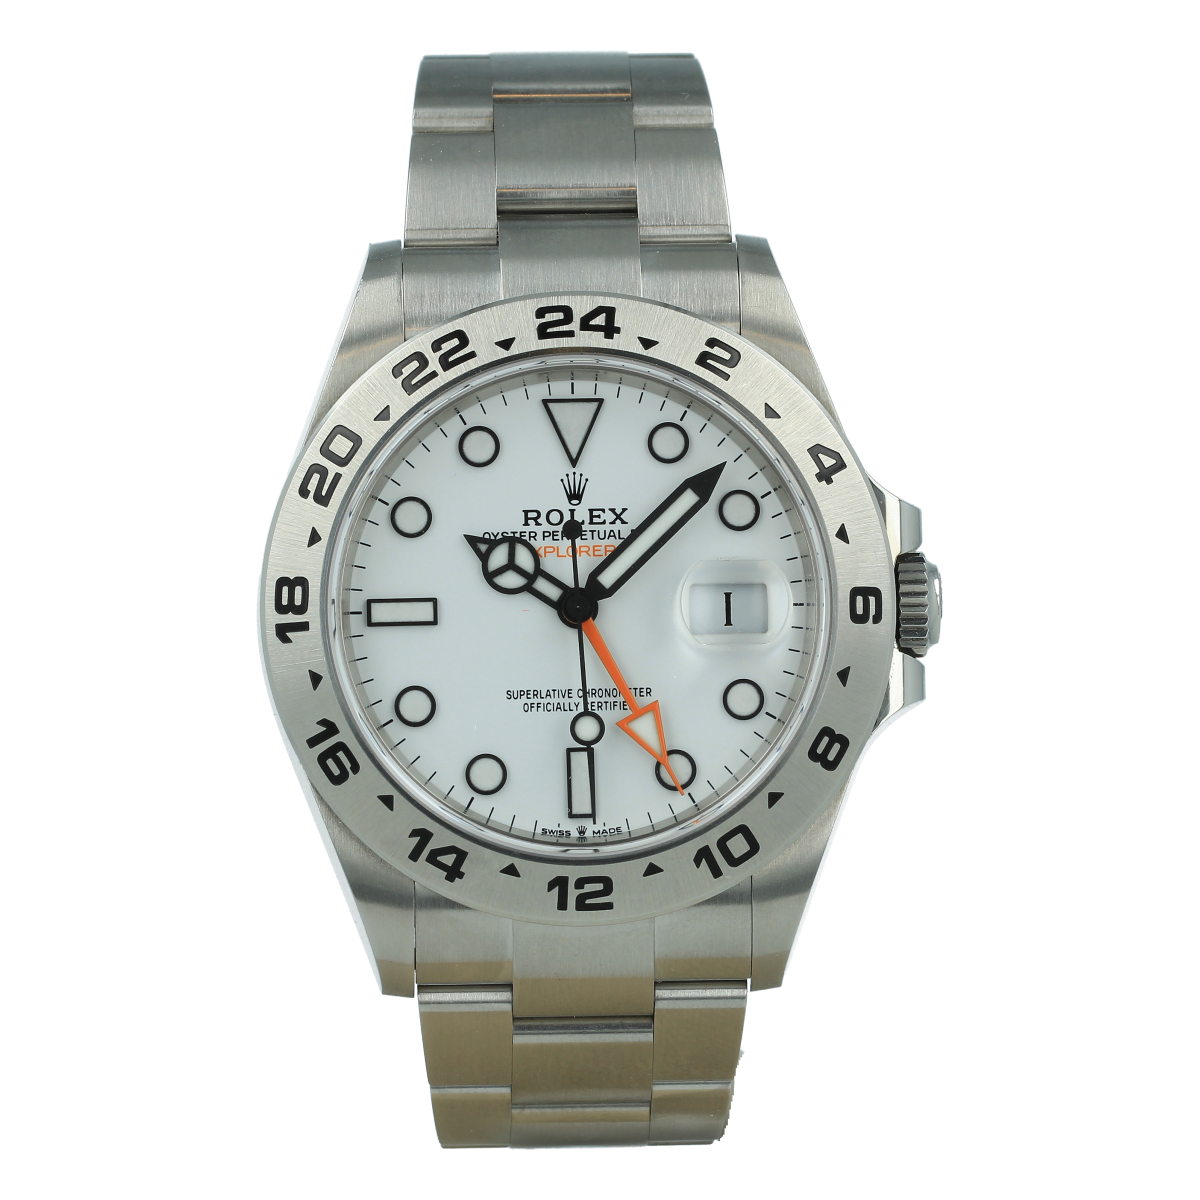 Rolex Explorer II 226570 Esfera Blanca *Nuevo a Estrenar* | Comprar reloj Rolex de segunda mano